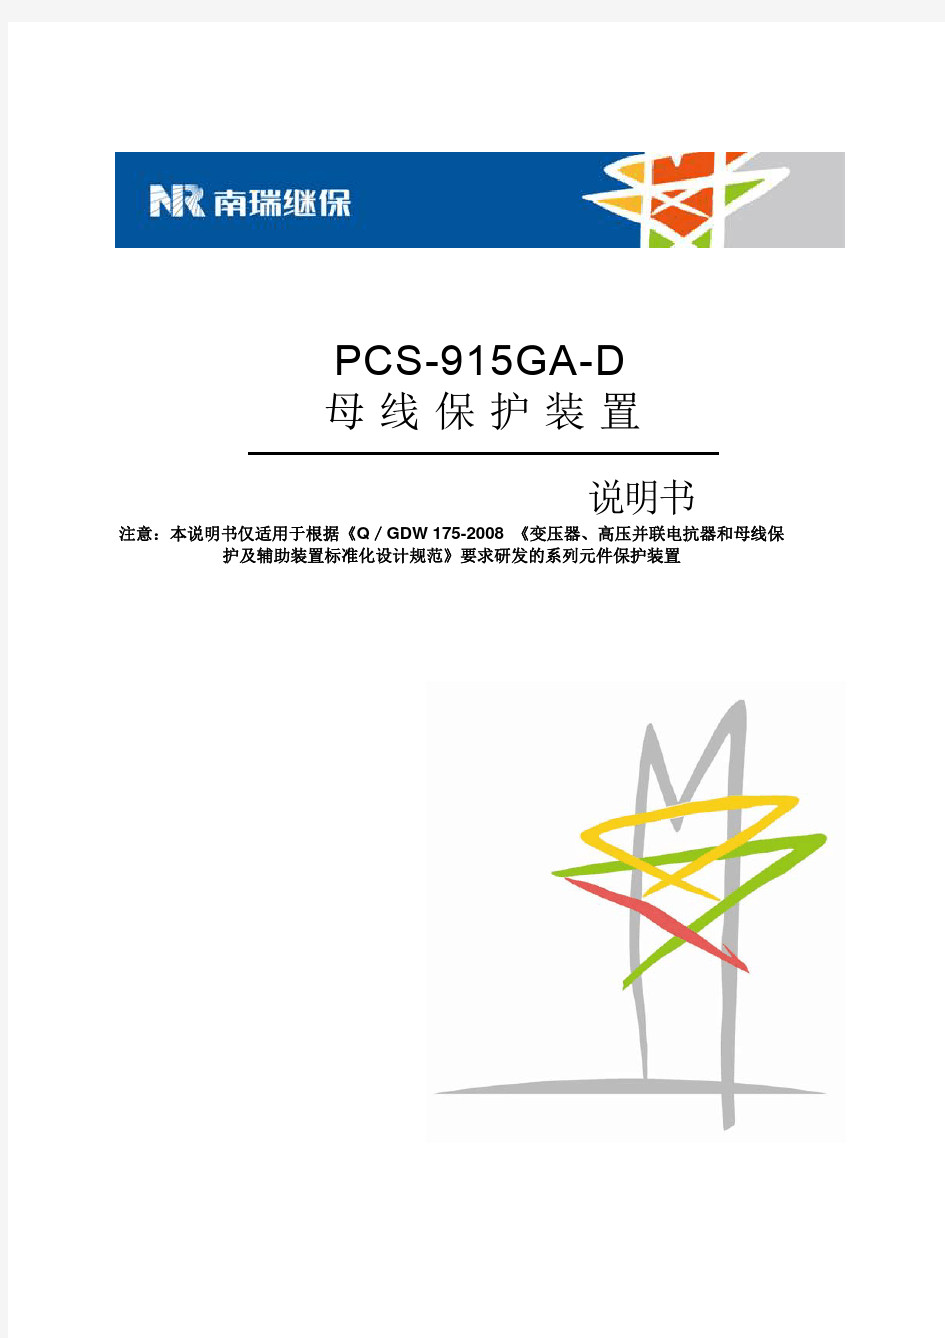 PCS-915GA-D_X_说明书_国内中文_标准版_X_R1.01_(ZL_YJBH5351.1312)